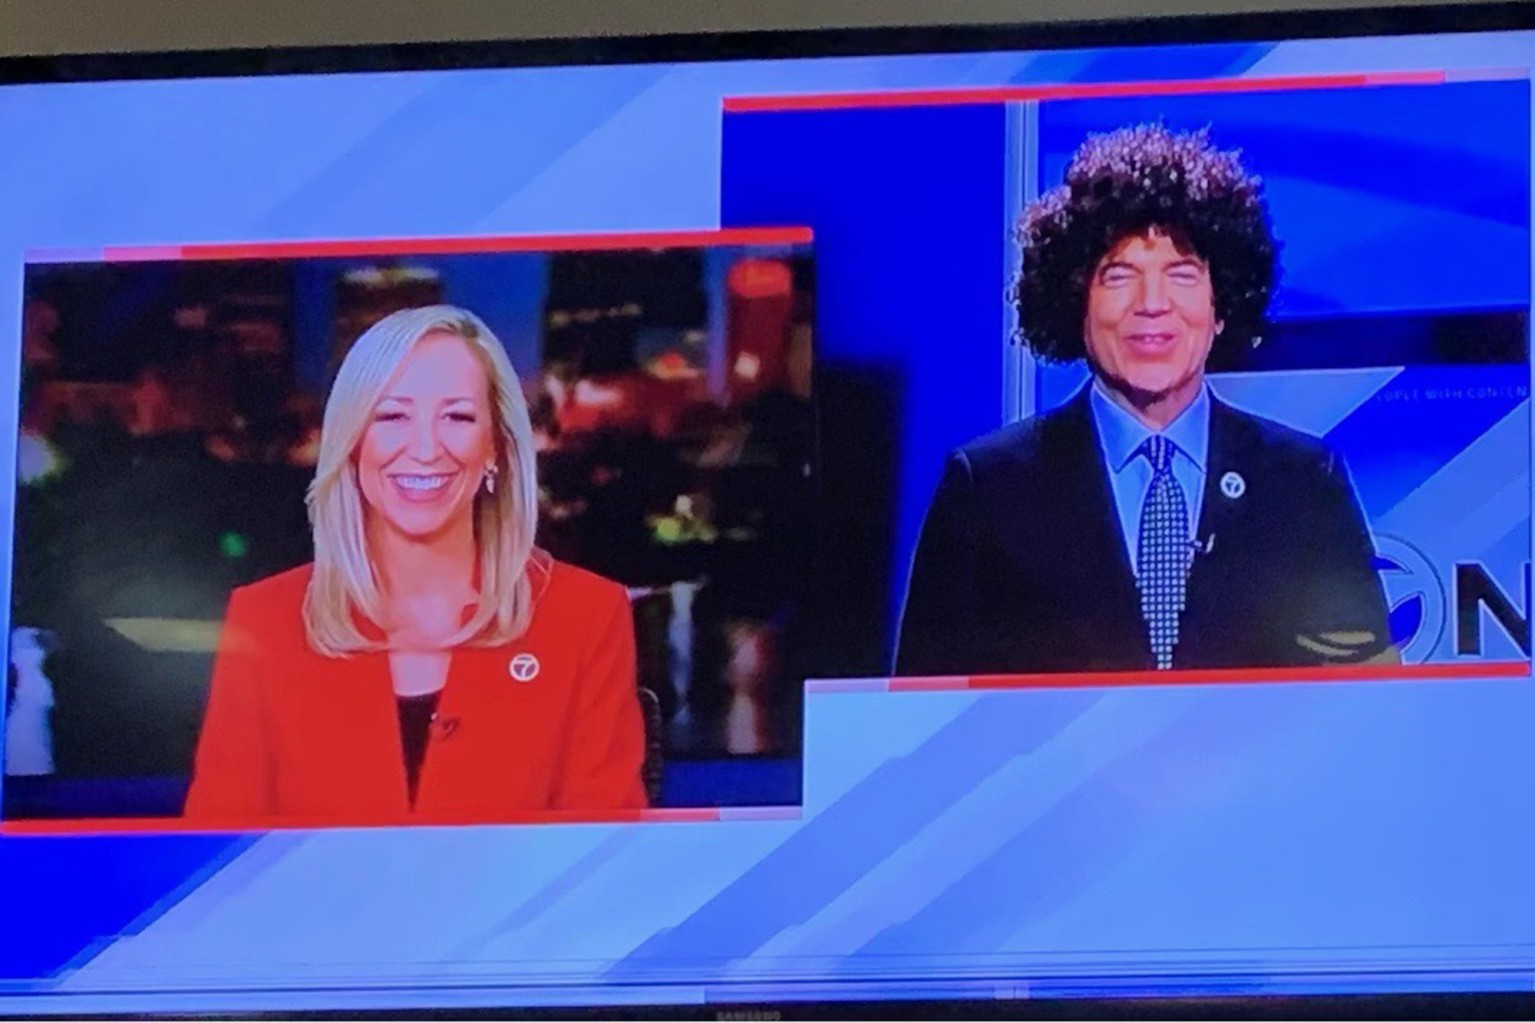 Nos EUA, dois apresentadores de TV são suspensos por usarem perucas afro em programa (Foto: Reprodução / NY Post)